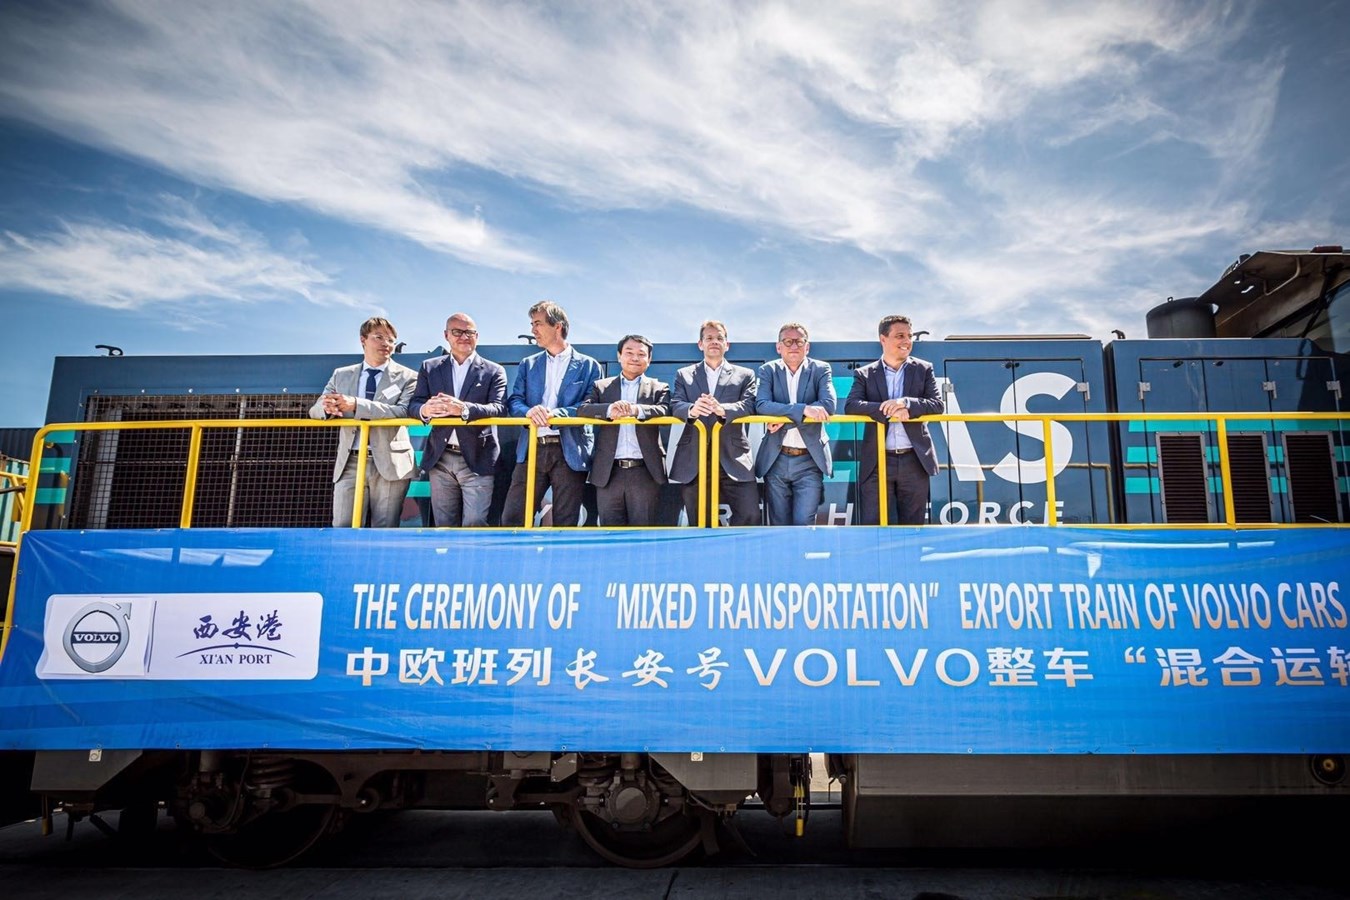 Les premières Volvo XC60 arrivent en Europe via la nouvelle route de la soie